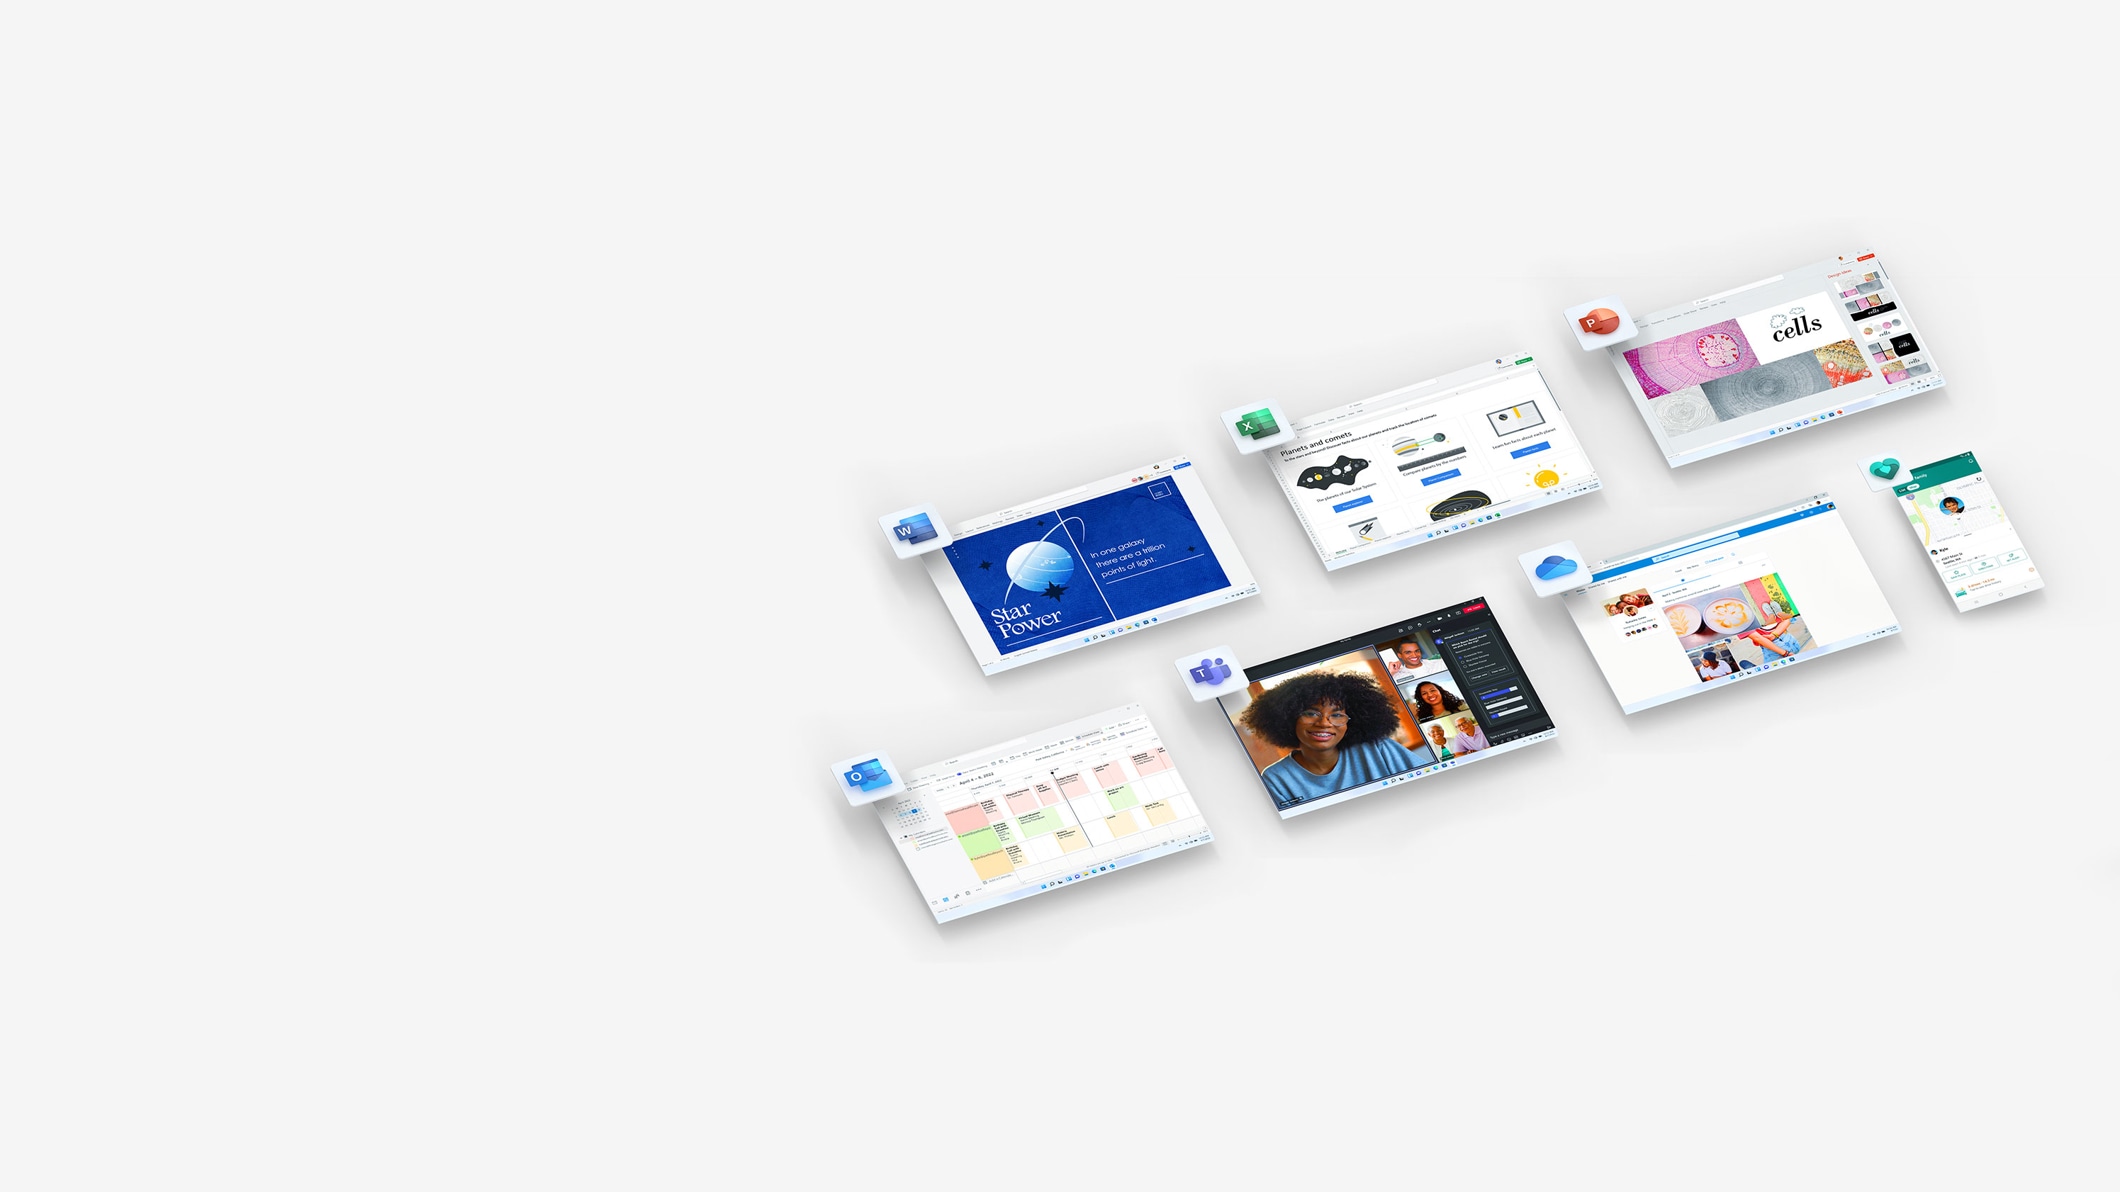 Microsoft OneDrive, Excel, Word, PowerPoint ve Outlook'u görüntüleyen ekranlar.